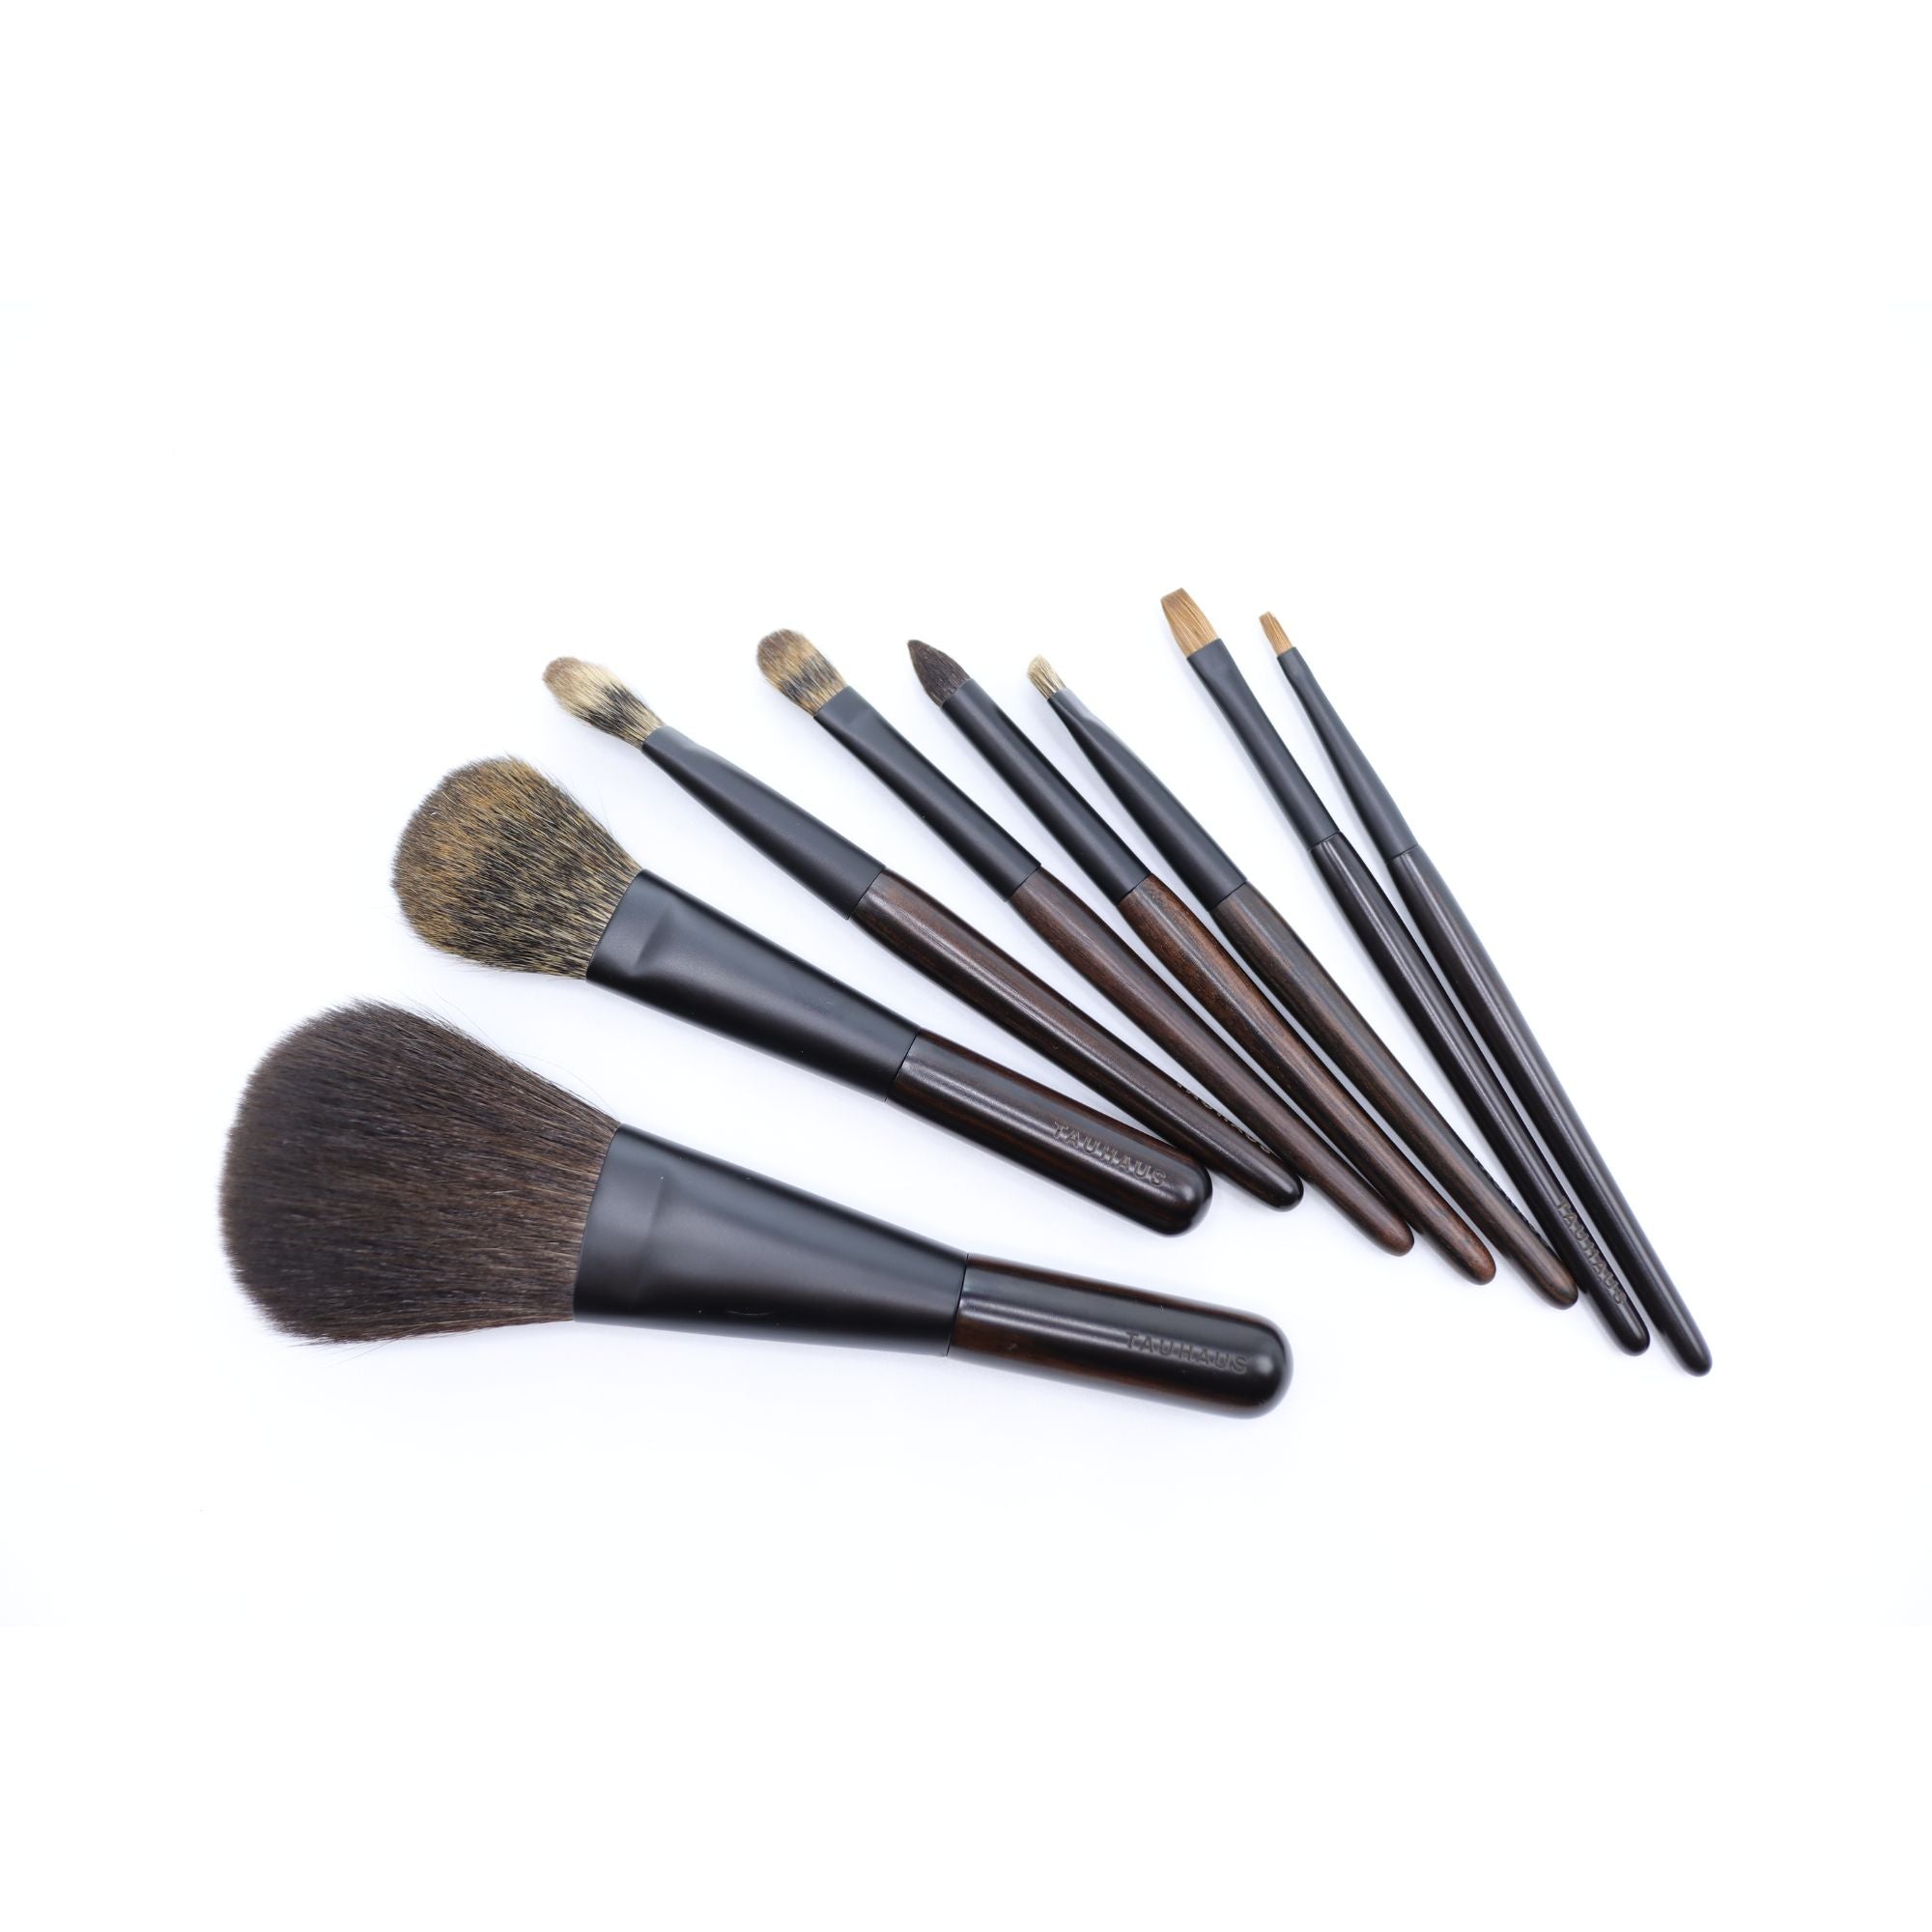 Tauhaus EH-05 Pencil Eyeshadow Brush, Ode Series - Fude Beauty, Japanese Makeup Brushes